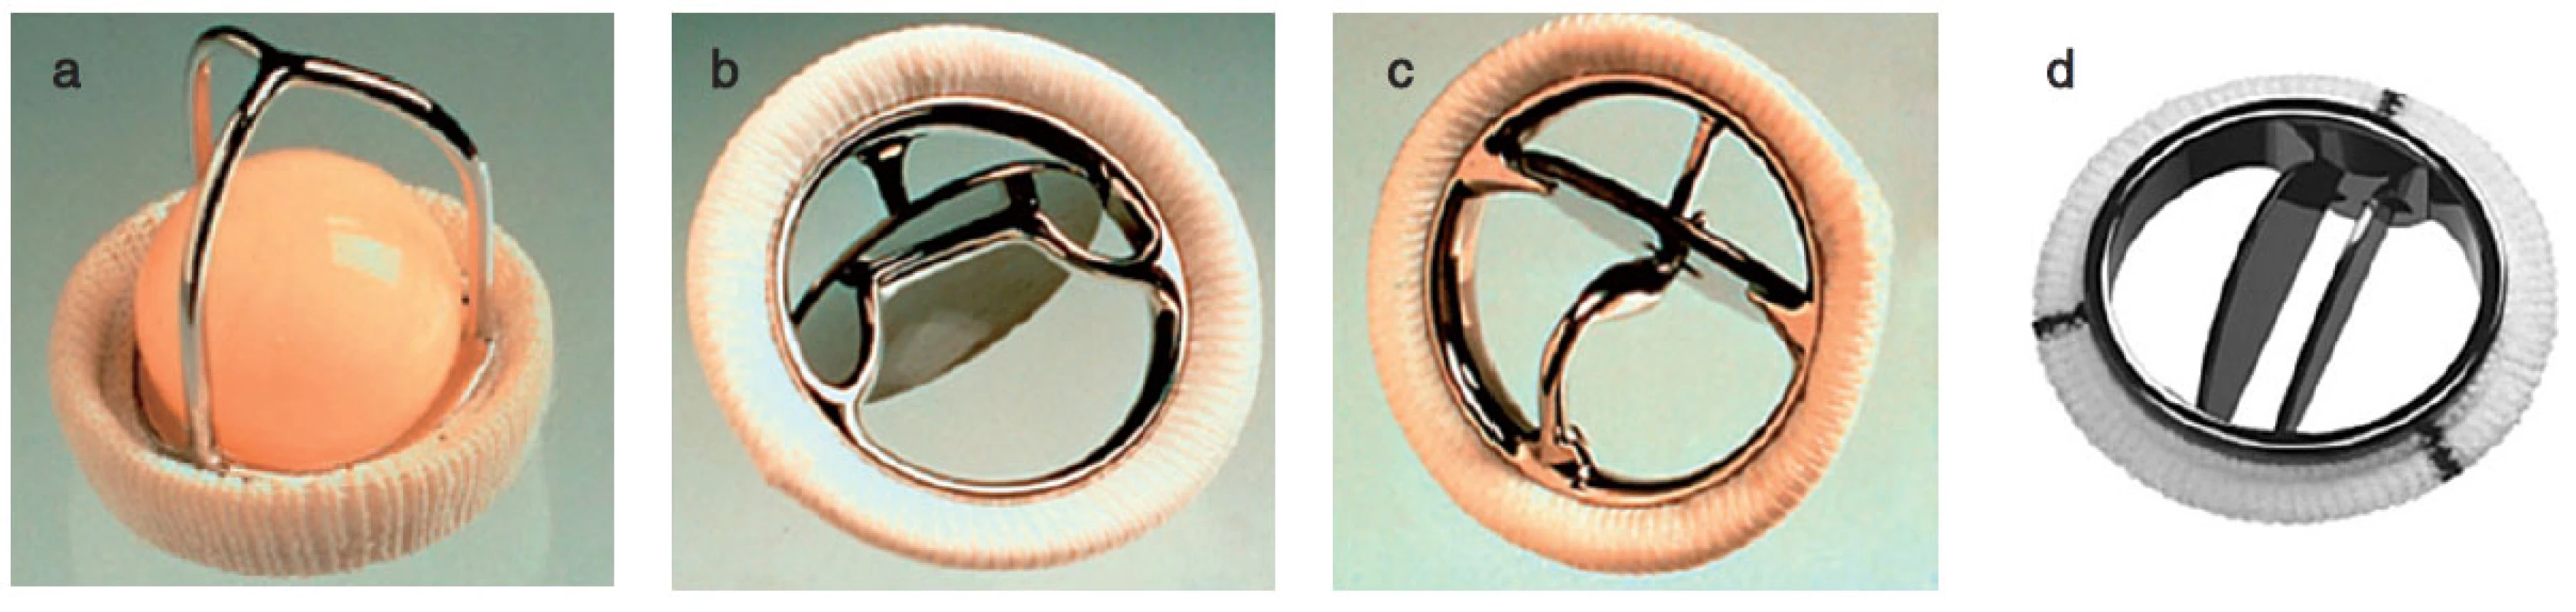 Příklady mechanických protéz
a – Starr-Edwards caged-ball, b – Bjork-Shiley tilting disc, c – Medtronic Hall tilting disc, d – Medtronic Hall tilting disc